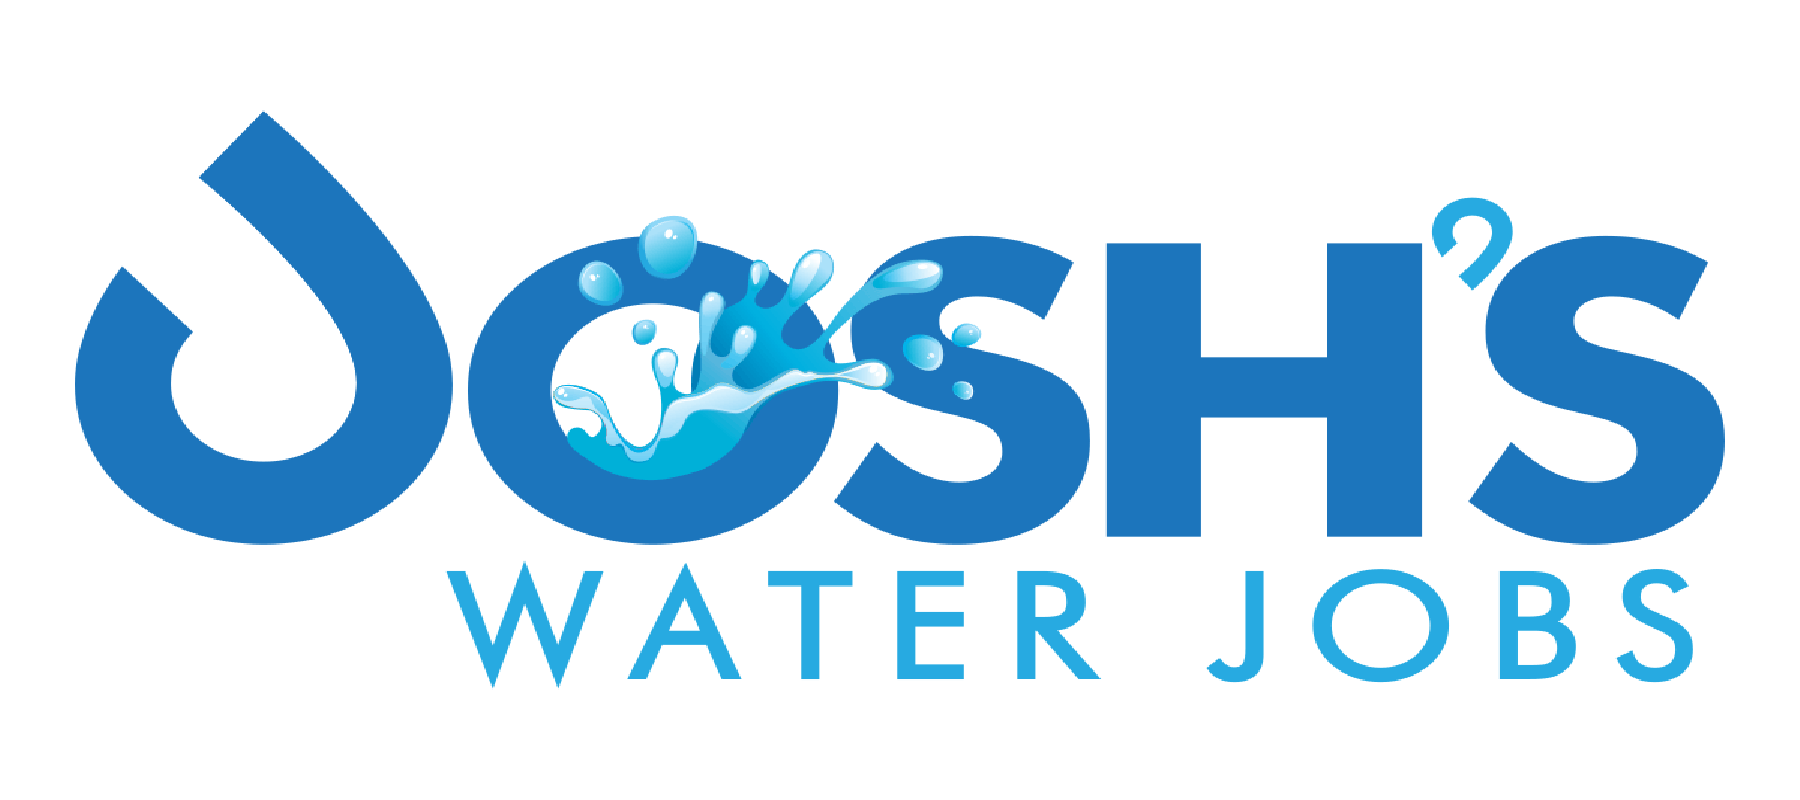 Josh's Water Jobs: Weekly Update